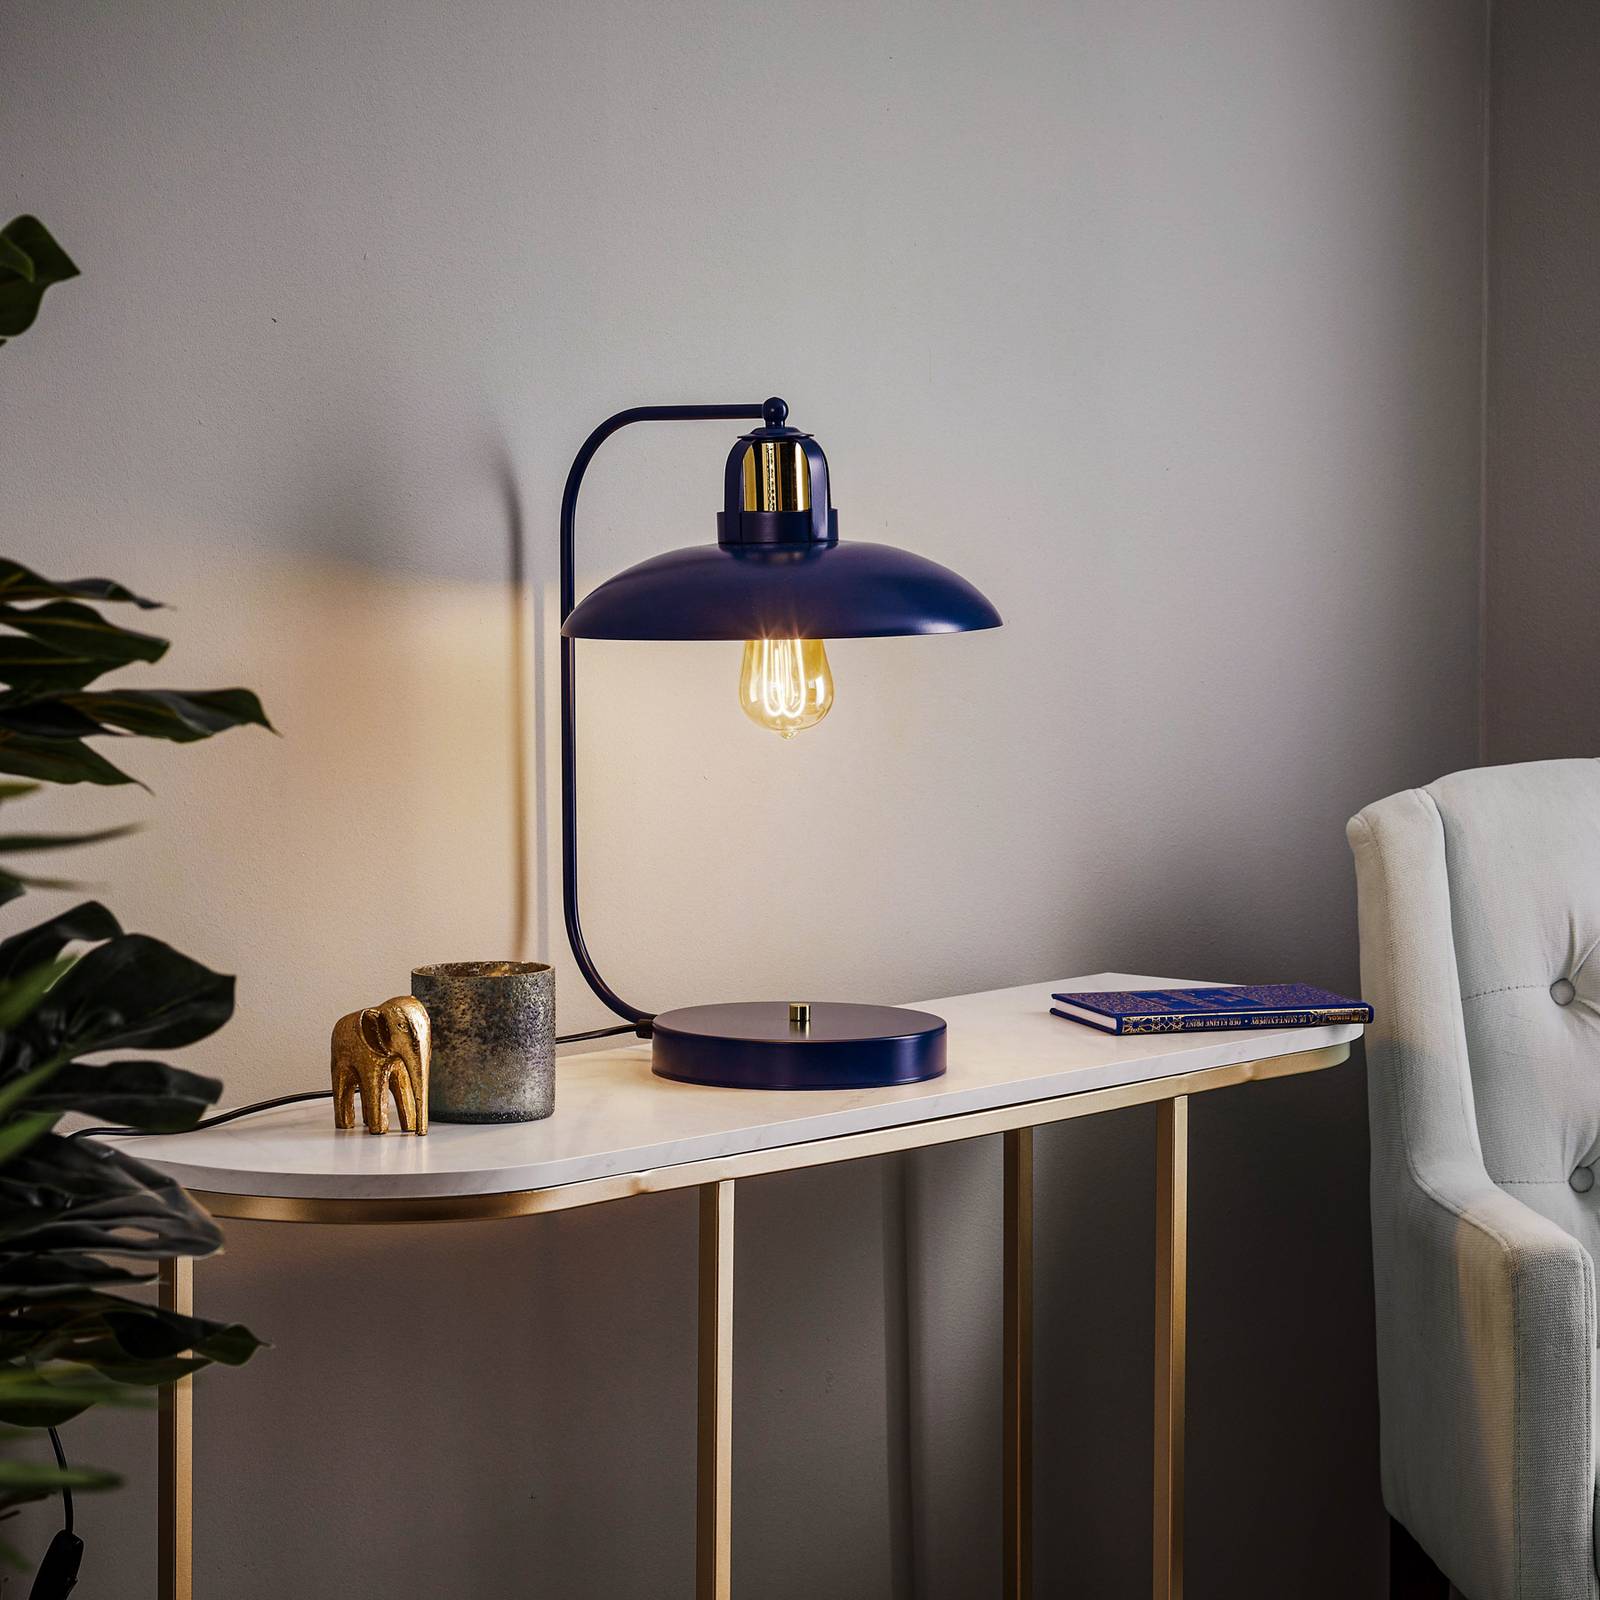 Eko-light felix asztali lámpa, kék/arany